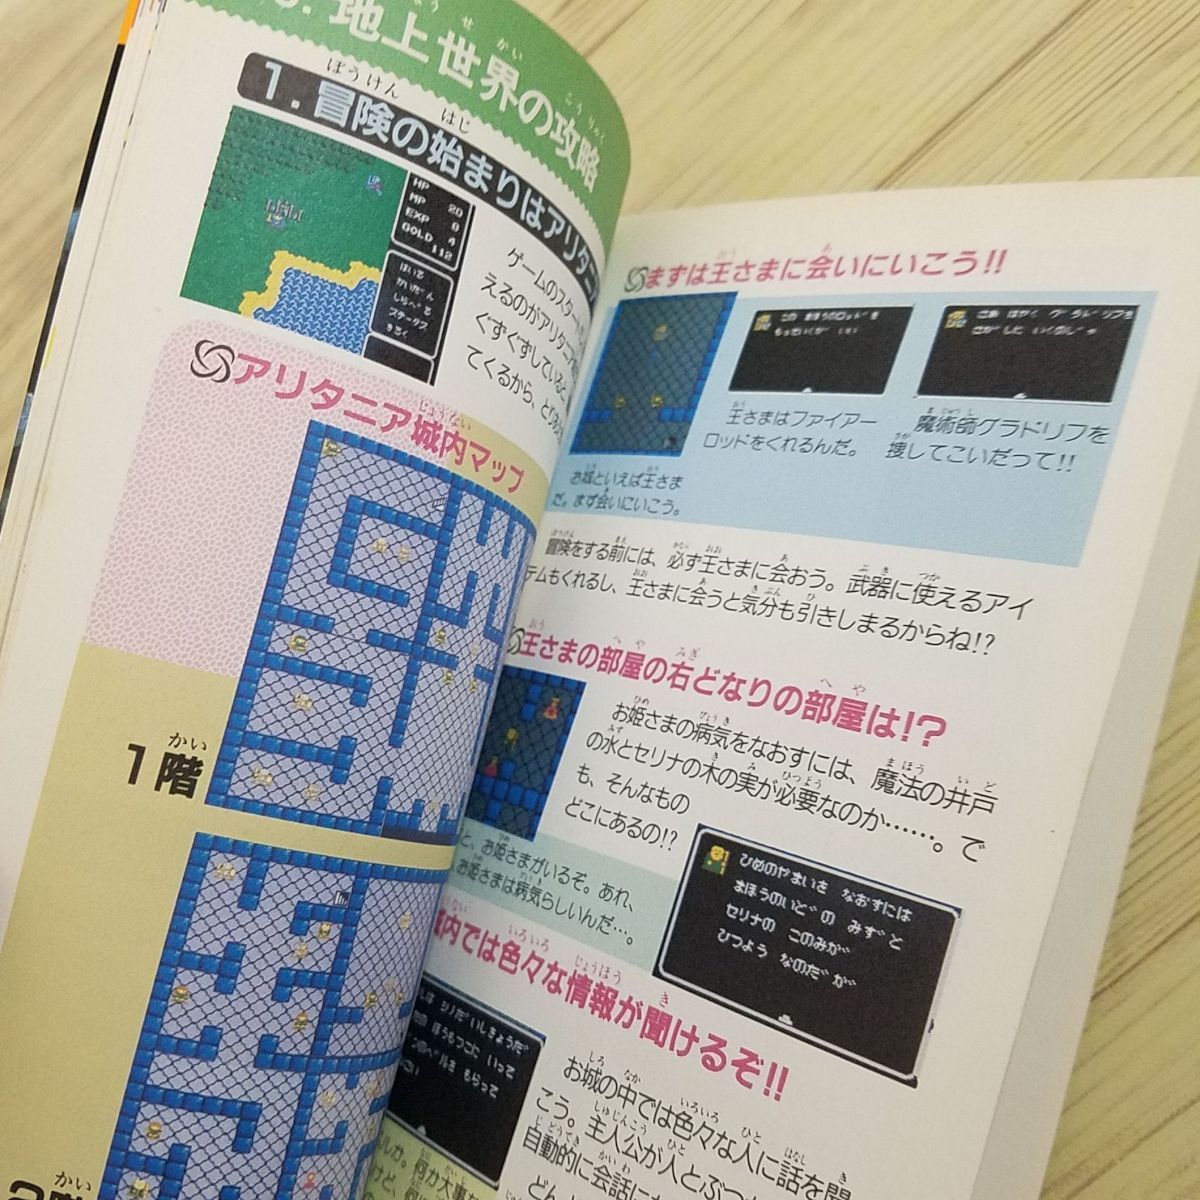  гид [ka Lee n. . обязательно ....книга@] добродетель промежуток книжный магазин sk одежда DOG дисковая система action RPG Famicom FC